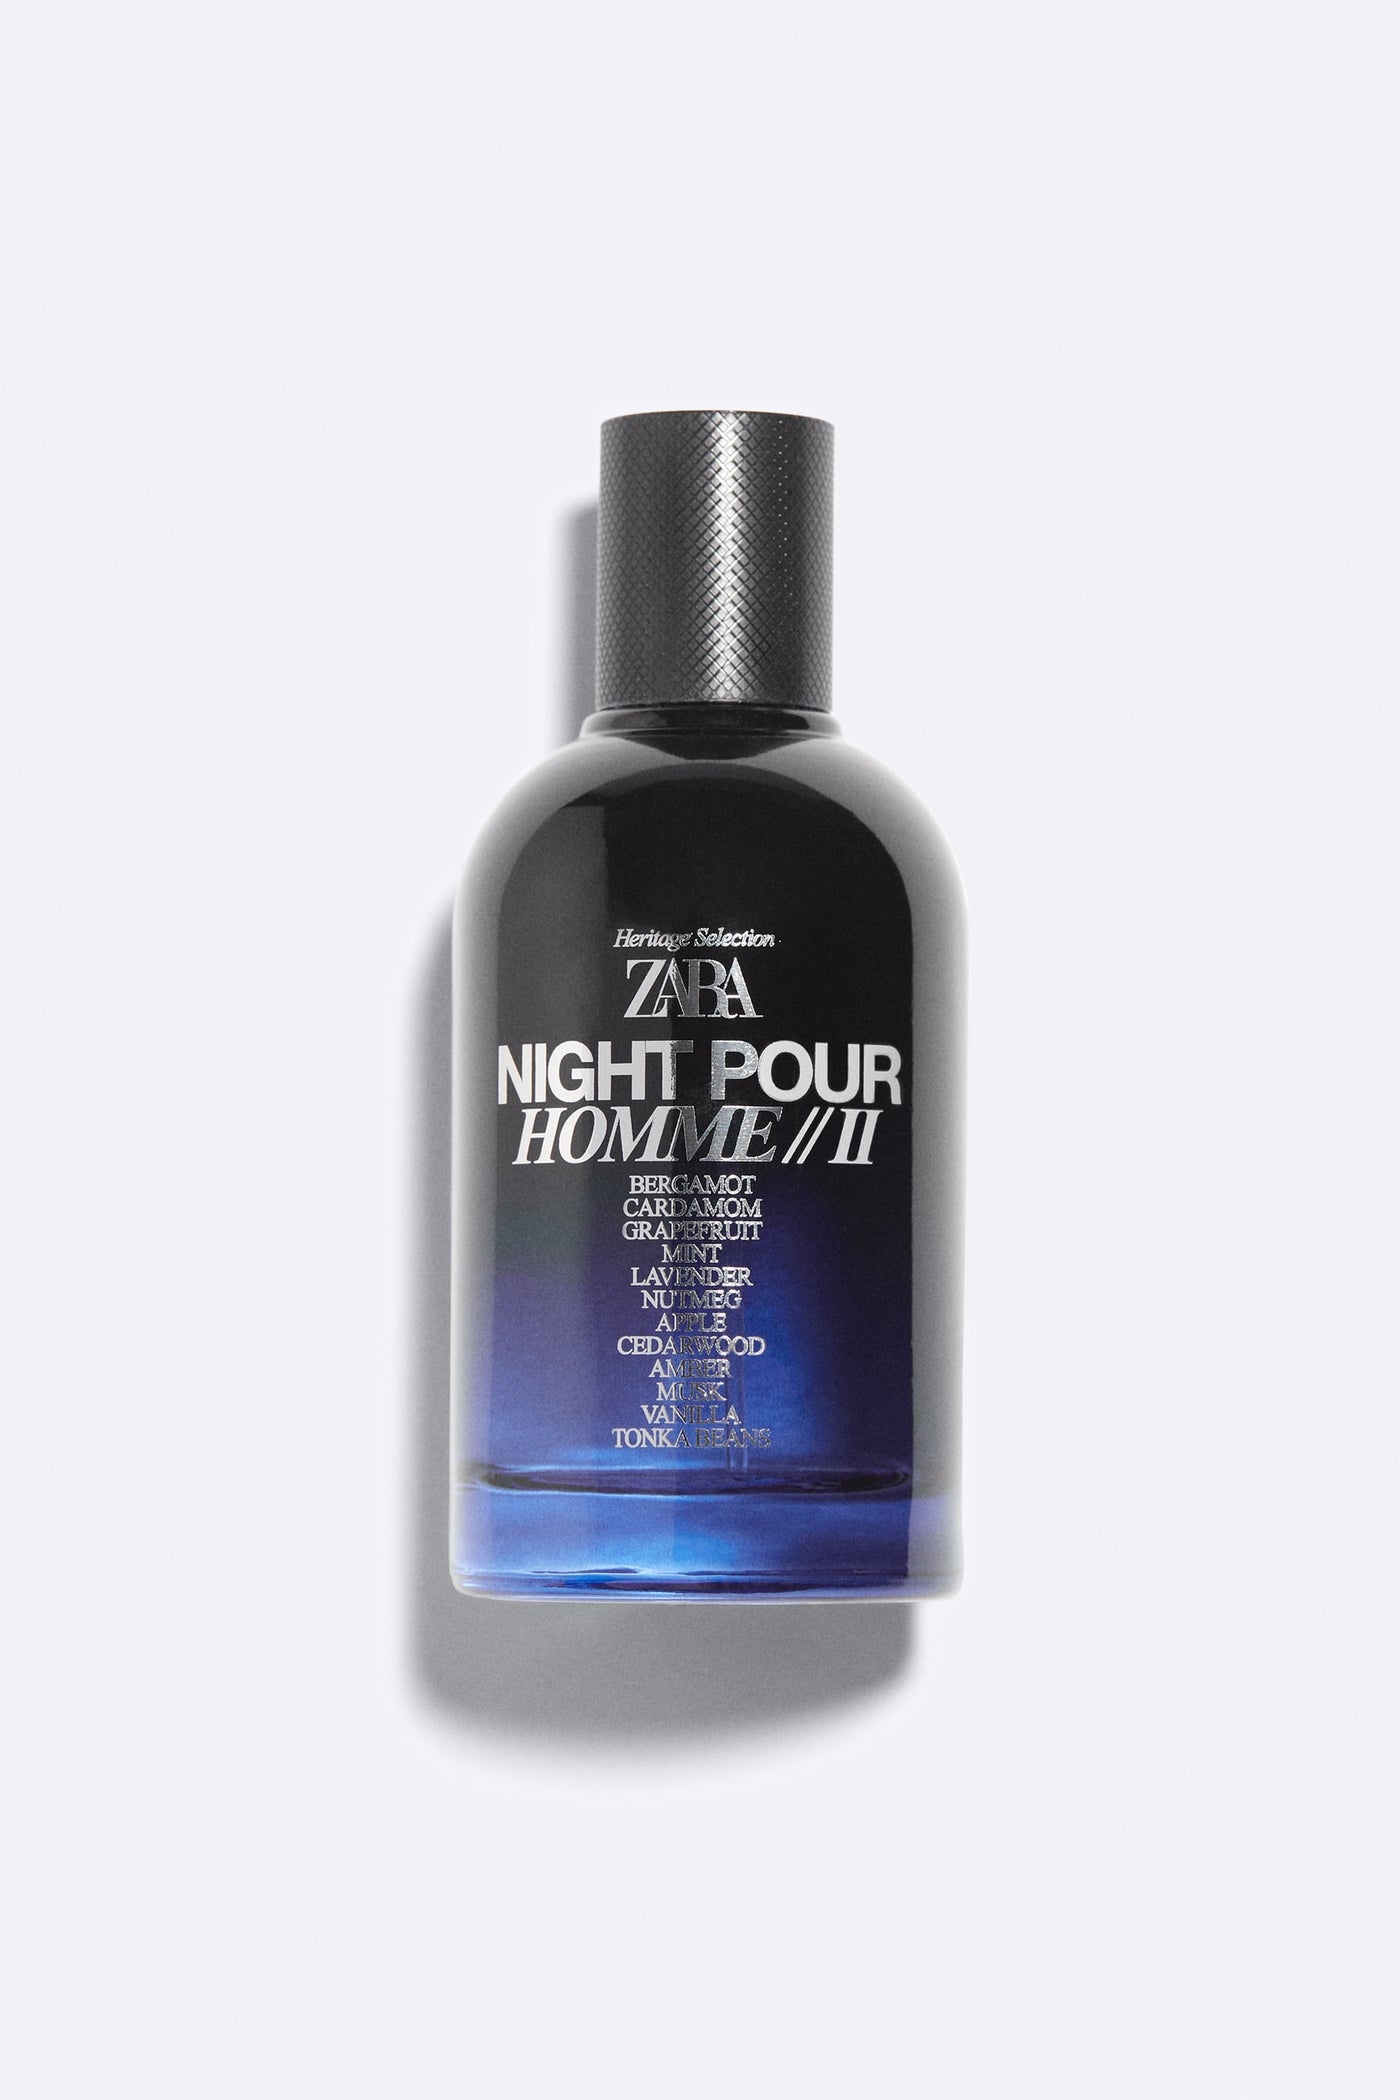 Zara Night Pour Homme //11 Edp 100ml